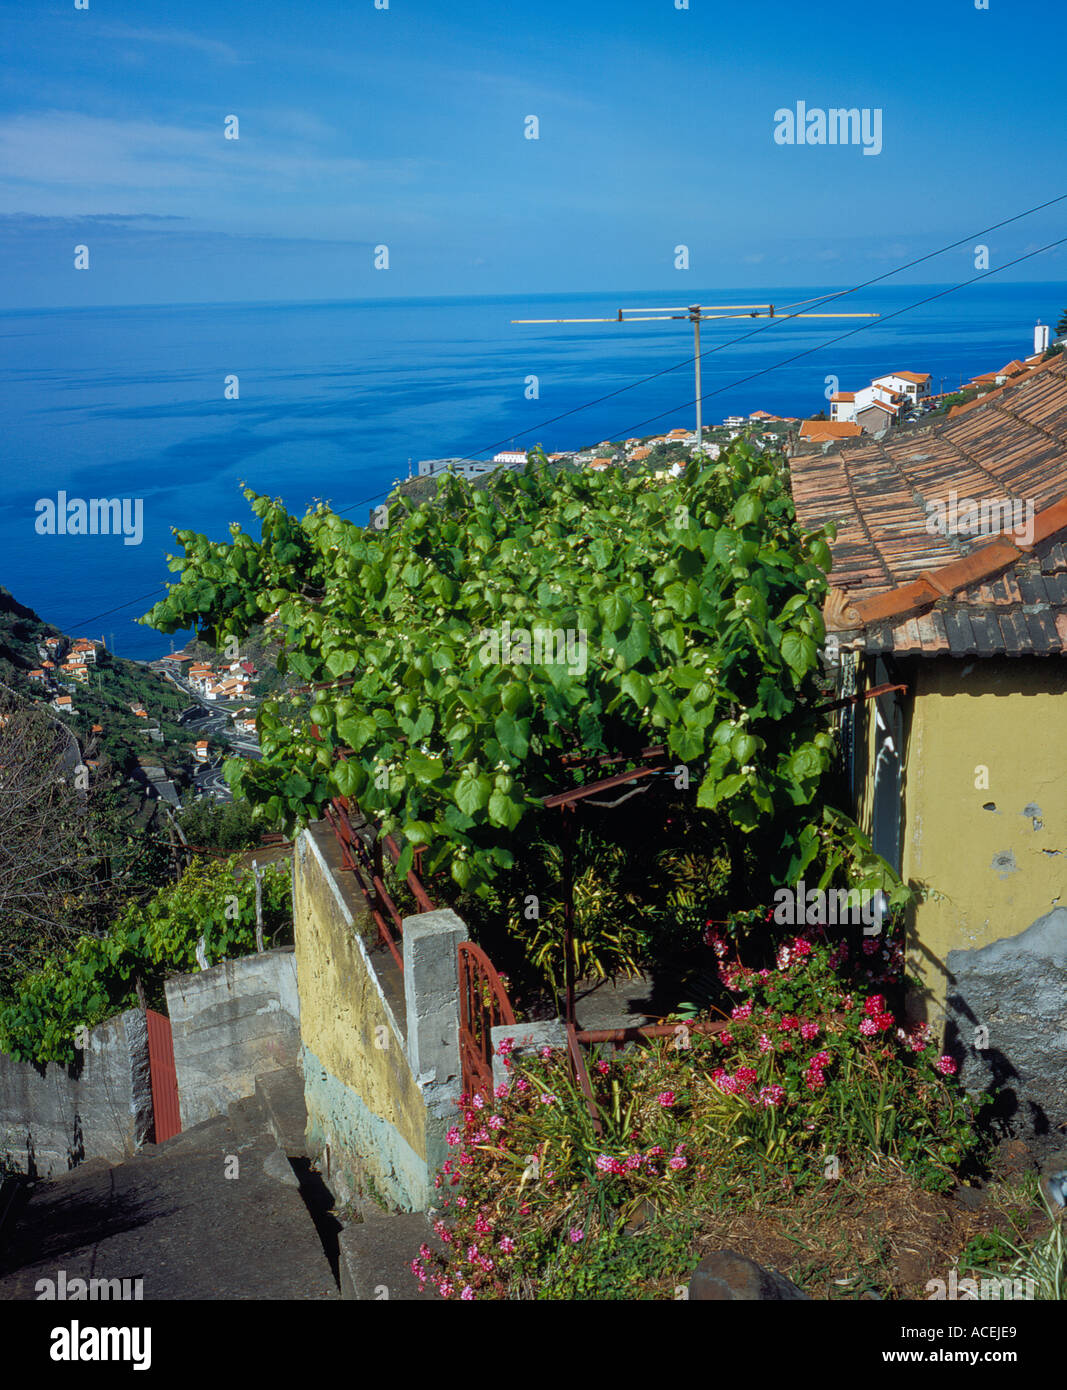 typisches Haus Veranda von Wein auf einem Hügel im Dorf von Arco da Calheta Madeira Portugal abgedeckt. Foto: Willy Matheisl Stockfoto